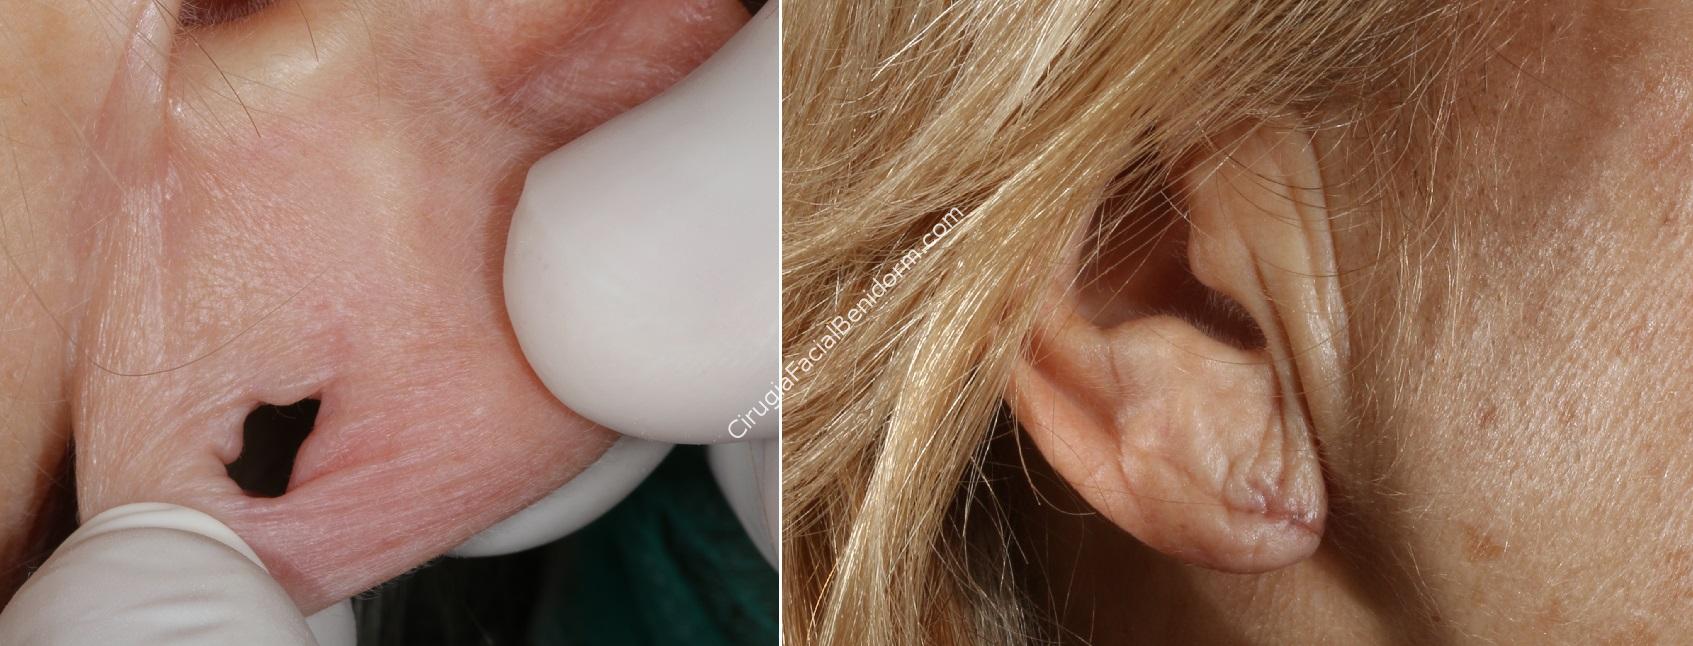 Es posible cerrar el agujero del lóbulo de la oreja con cirugía?